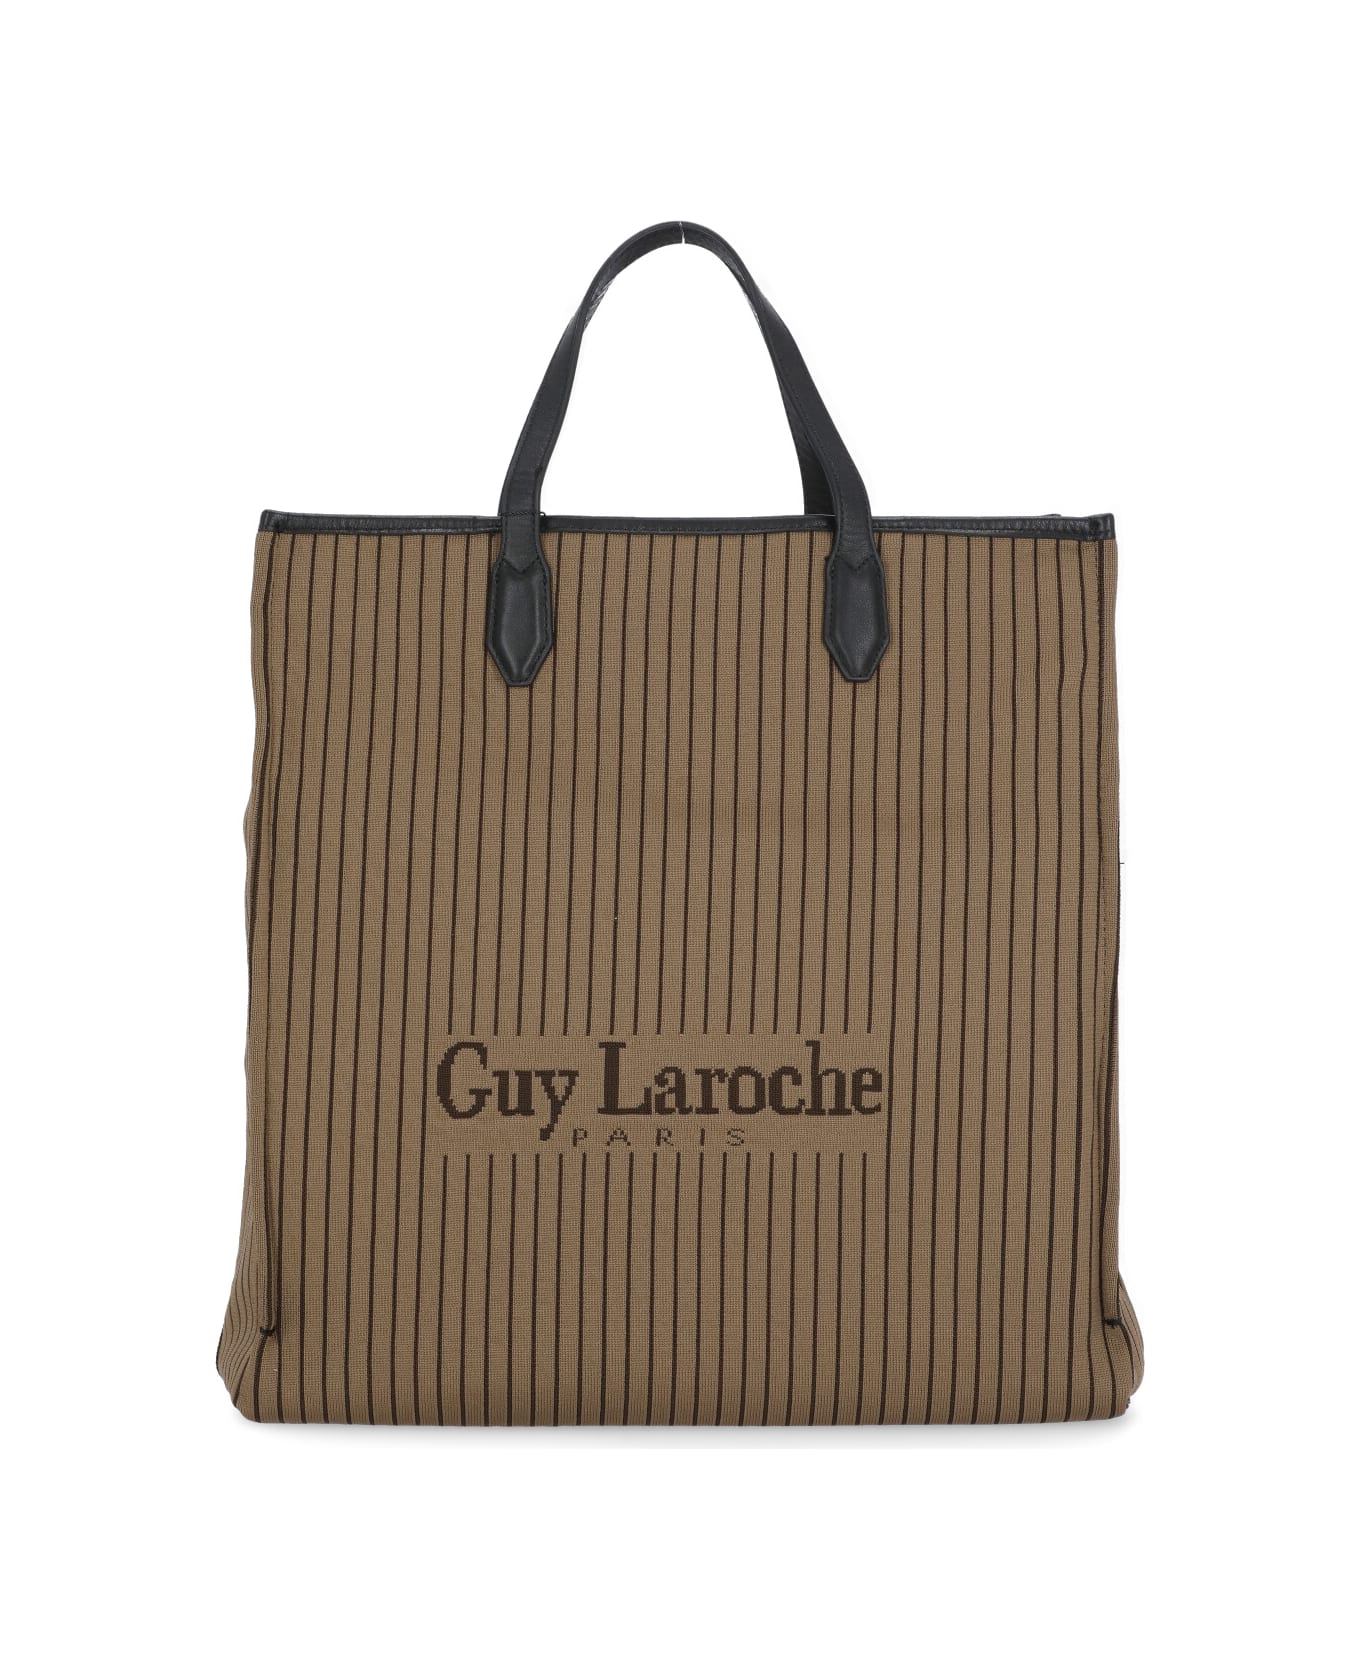 Guy Laroche Large Tote Bag in Brown